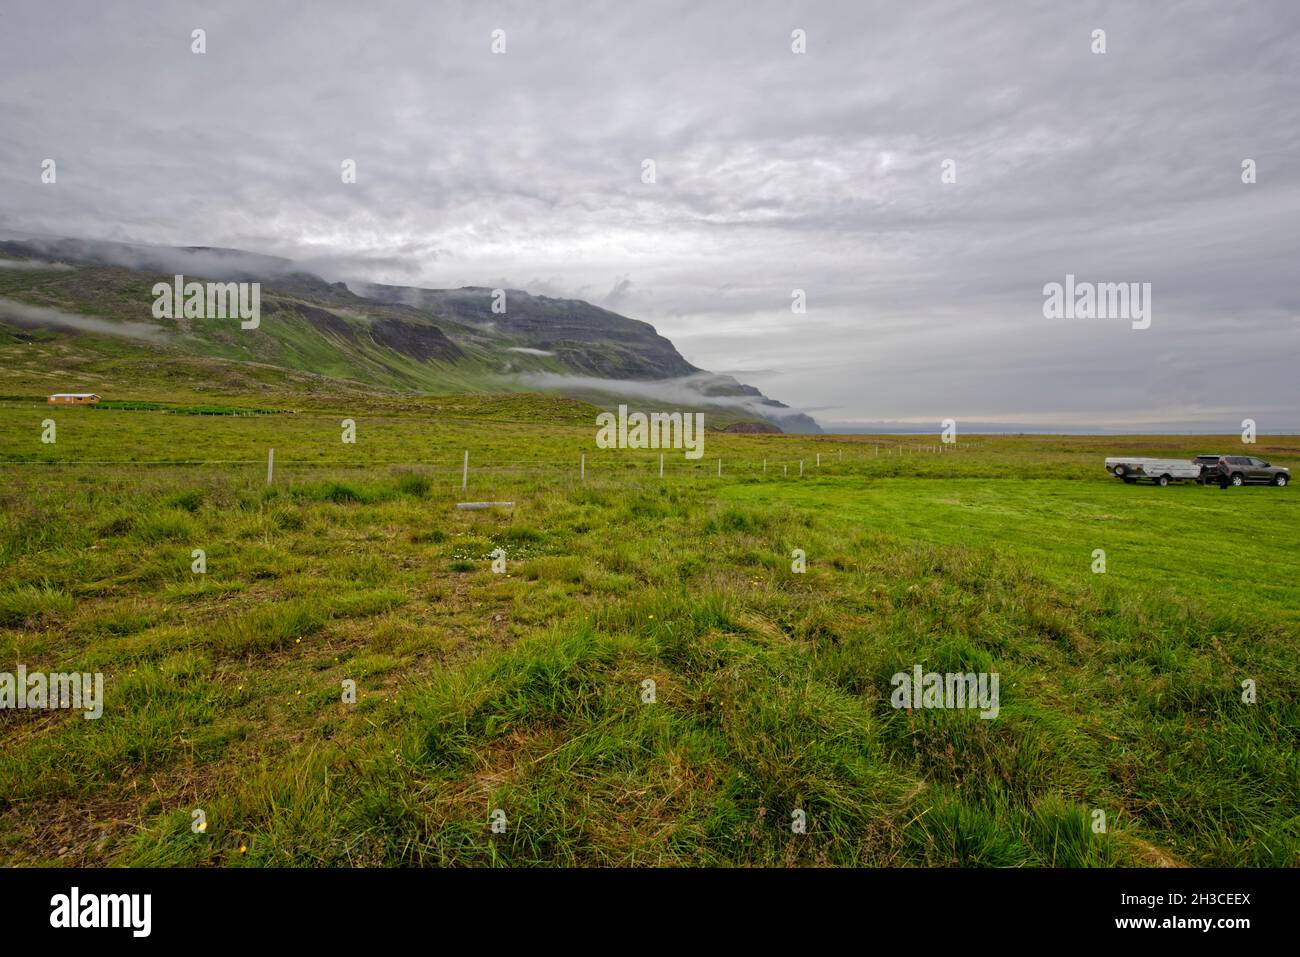 Drangey ist eine unbewohnte isländische Insel, die in der Mitte des Fjordes Skagafjörður gelegen ist.Papageitaucher.Küstenlandschaft auf der Trollaska Stock Photo